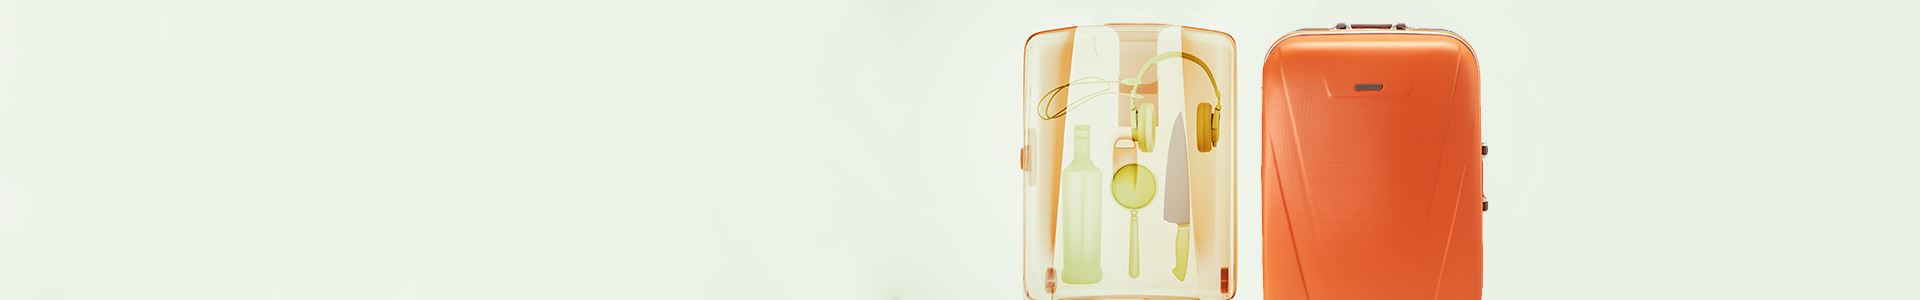 Foto de una maleta trolley naranja con una radiografía de su interior en el lado izquierdo. Los rayos X muestran varios elementos: un cuchillo, unos auriculares, una botella y una lupa.